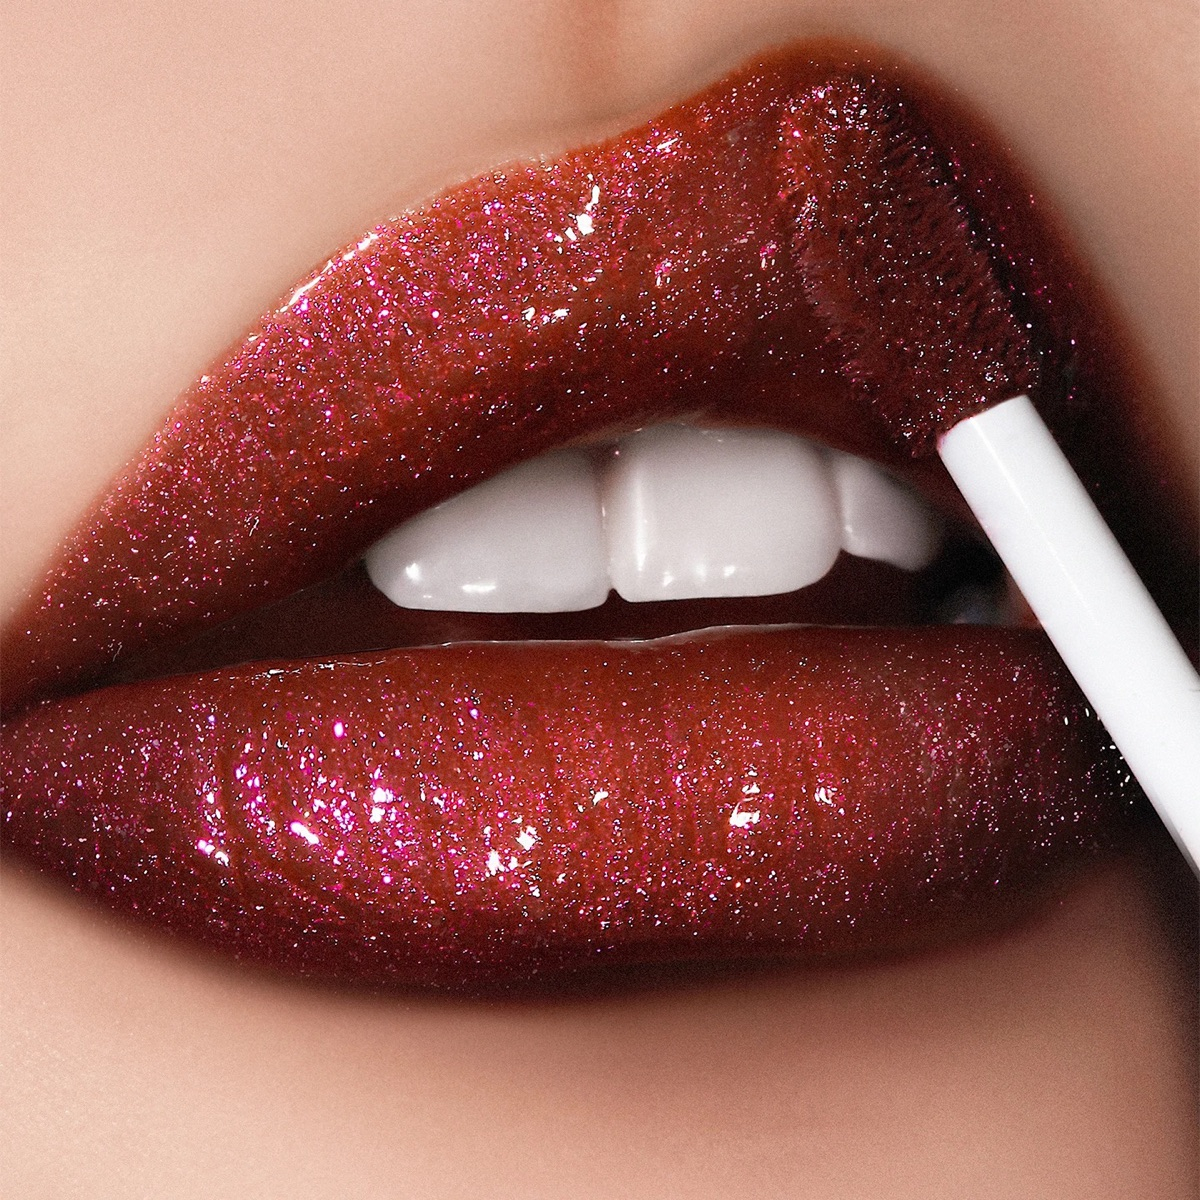 Where to Buy TikTok's Pat Lipstick Before Gone! - E! Online